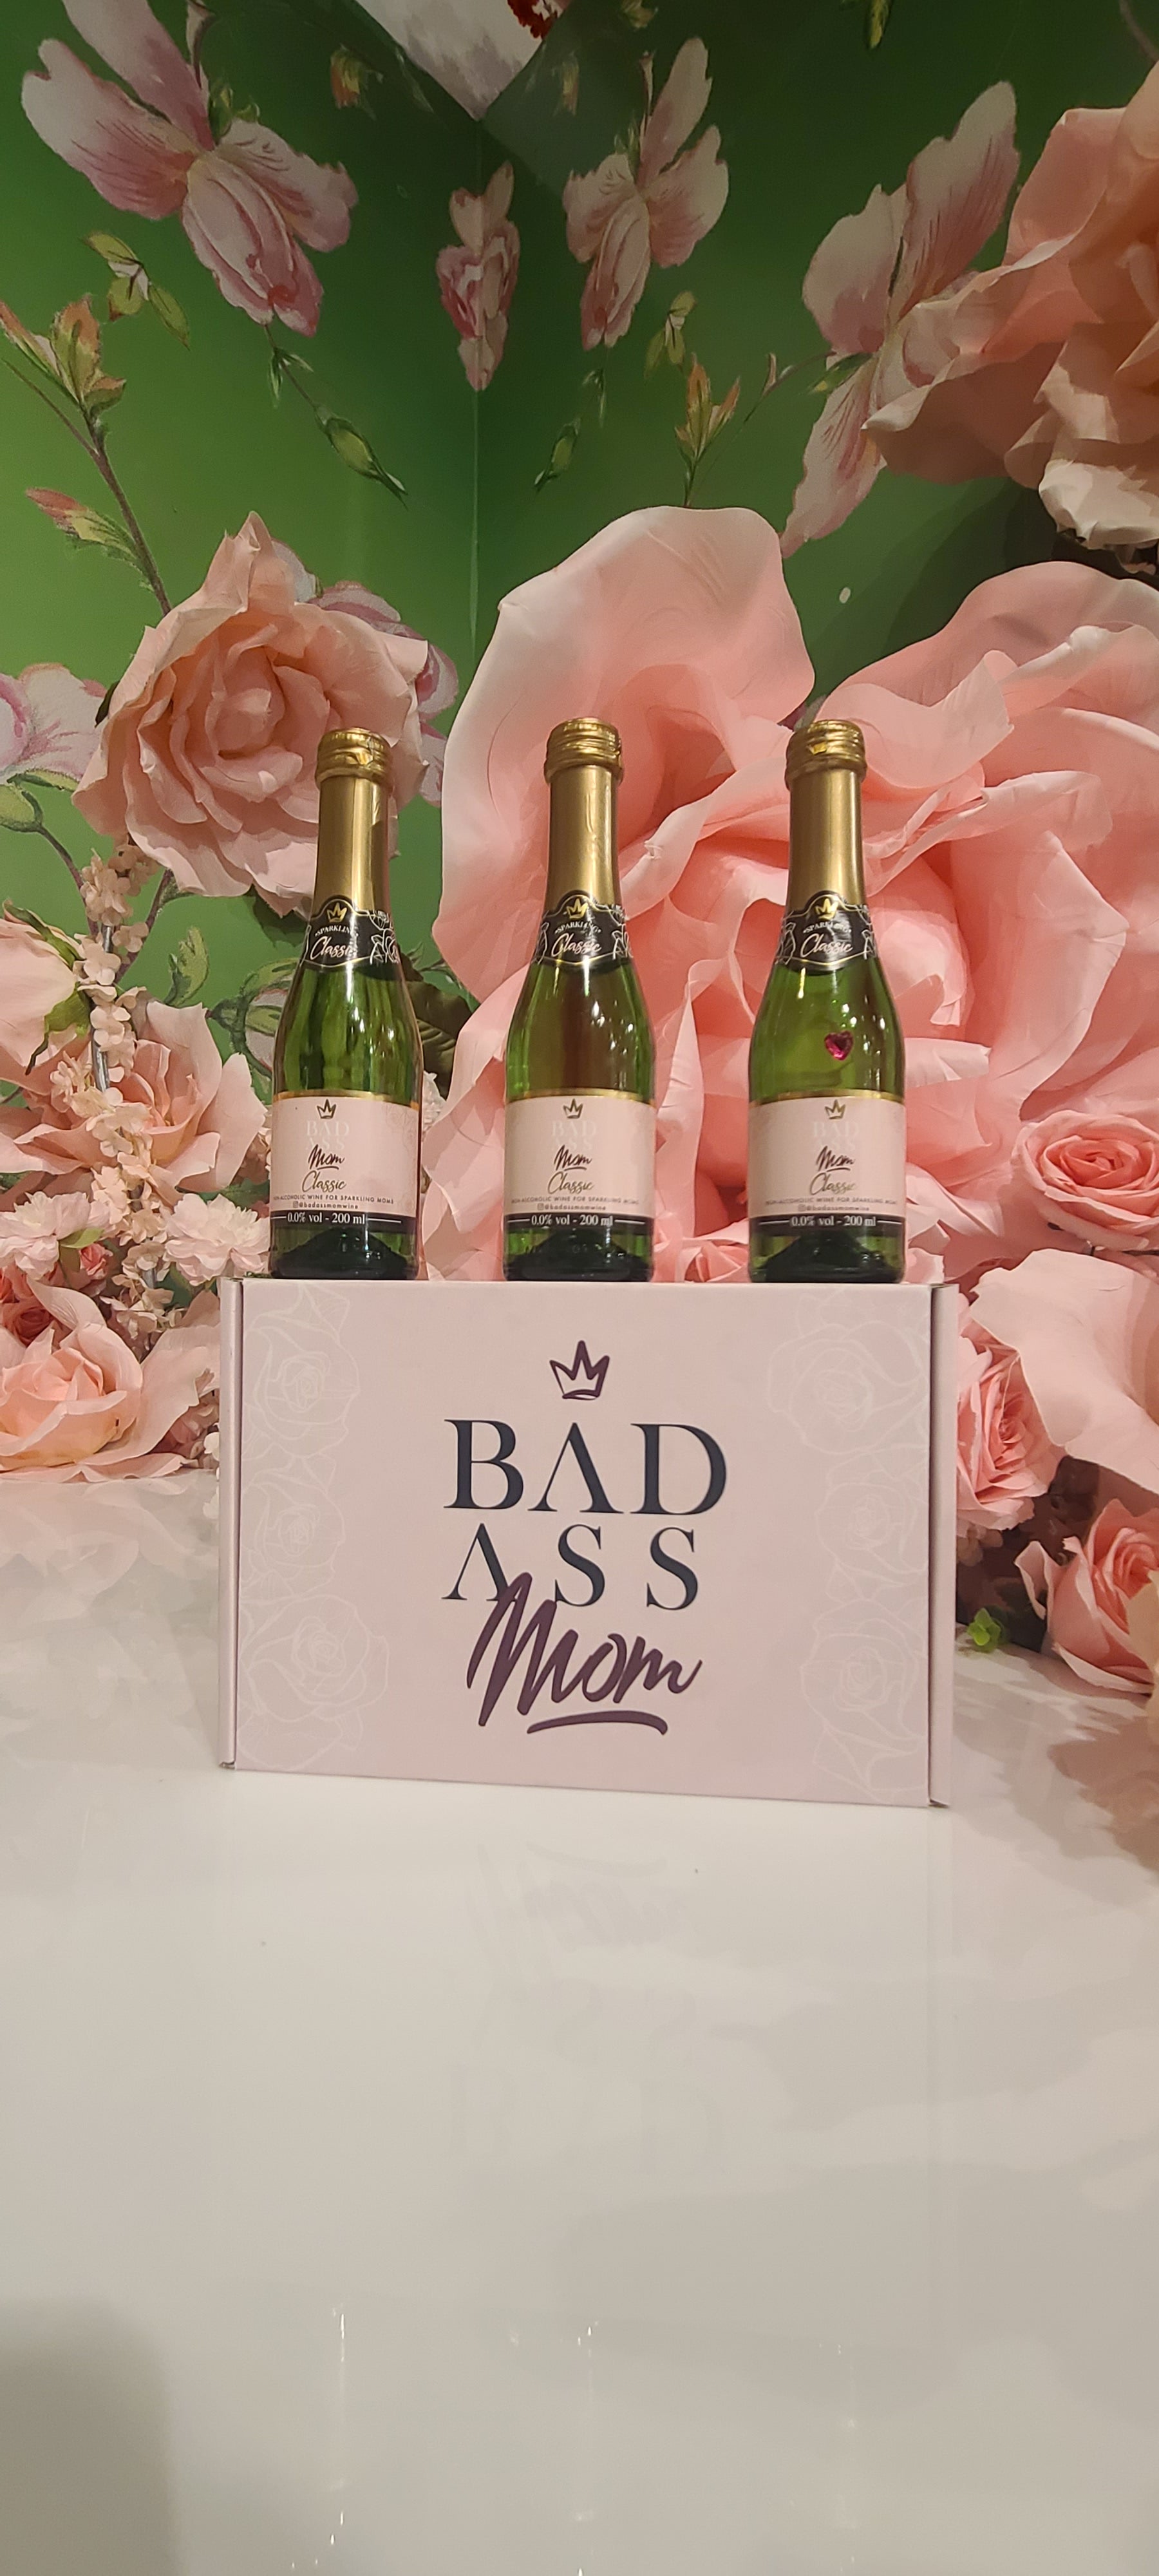 Mama Needs winesx3 - Badass Mom